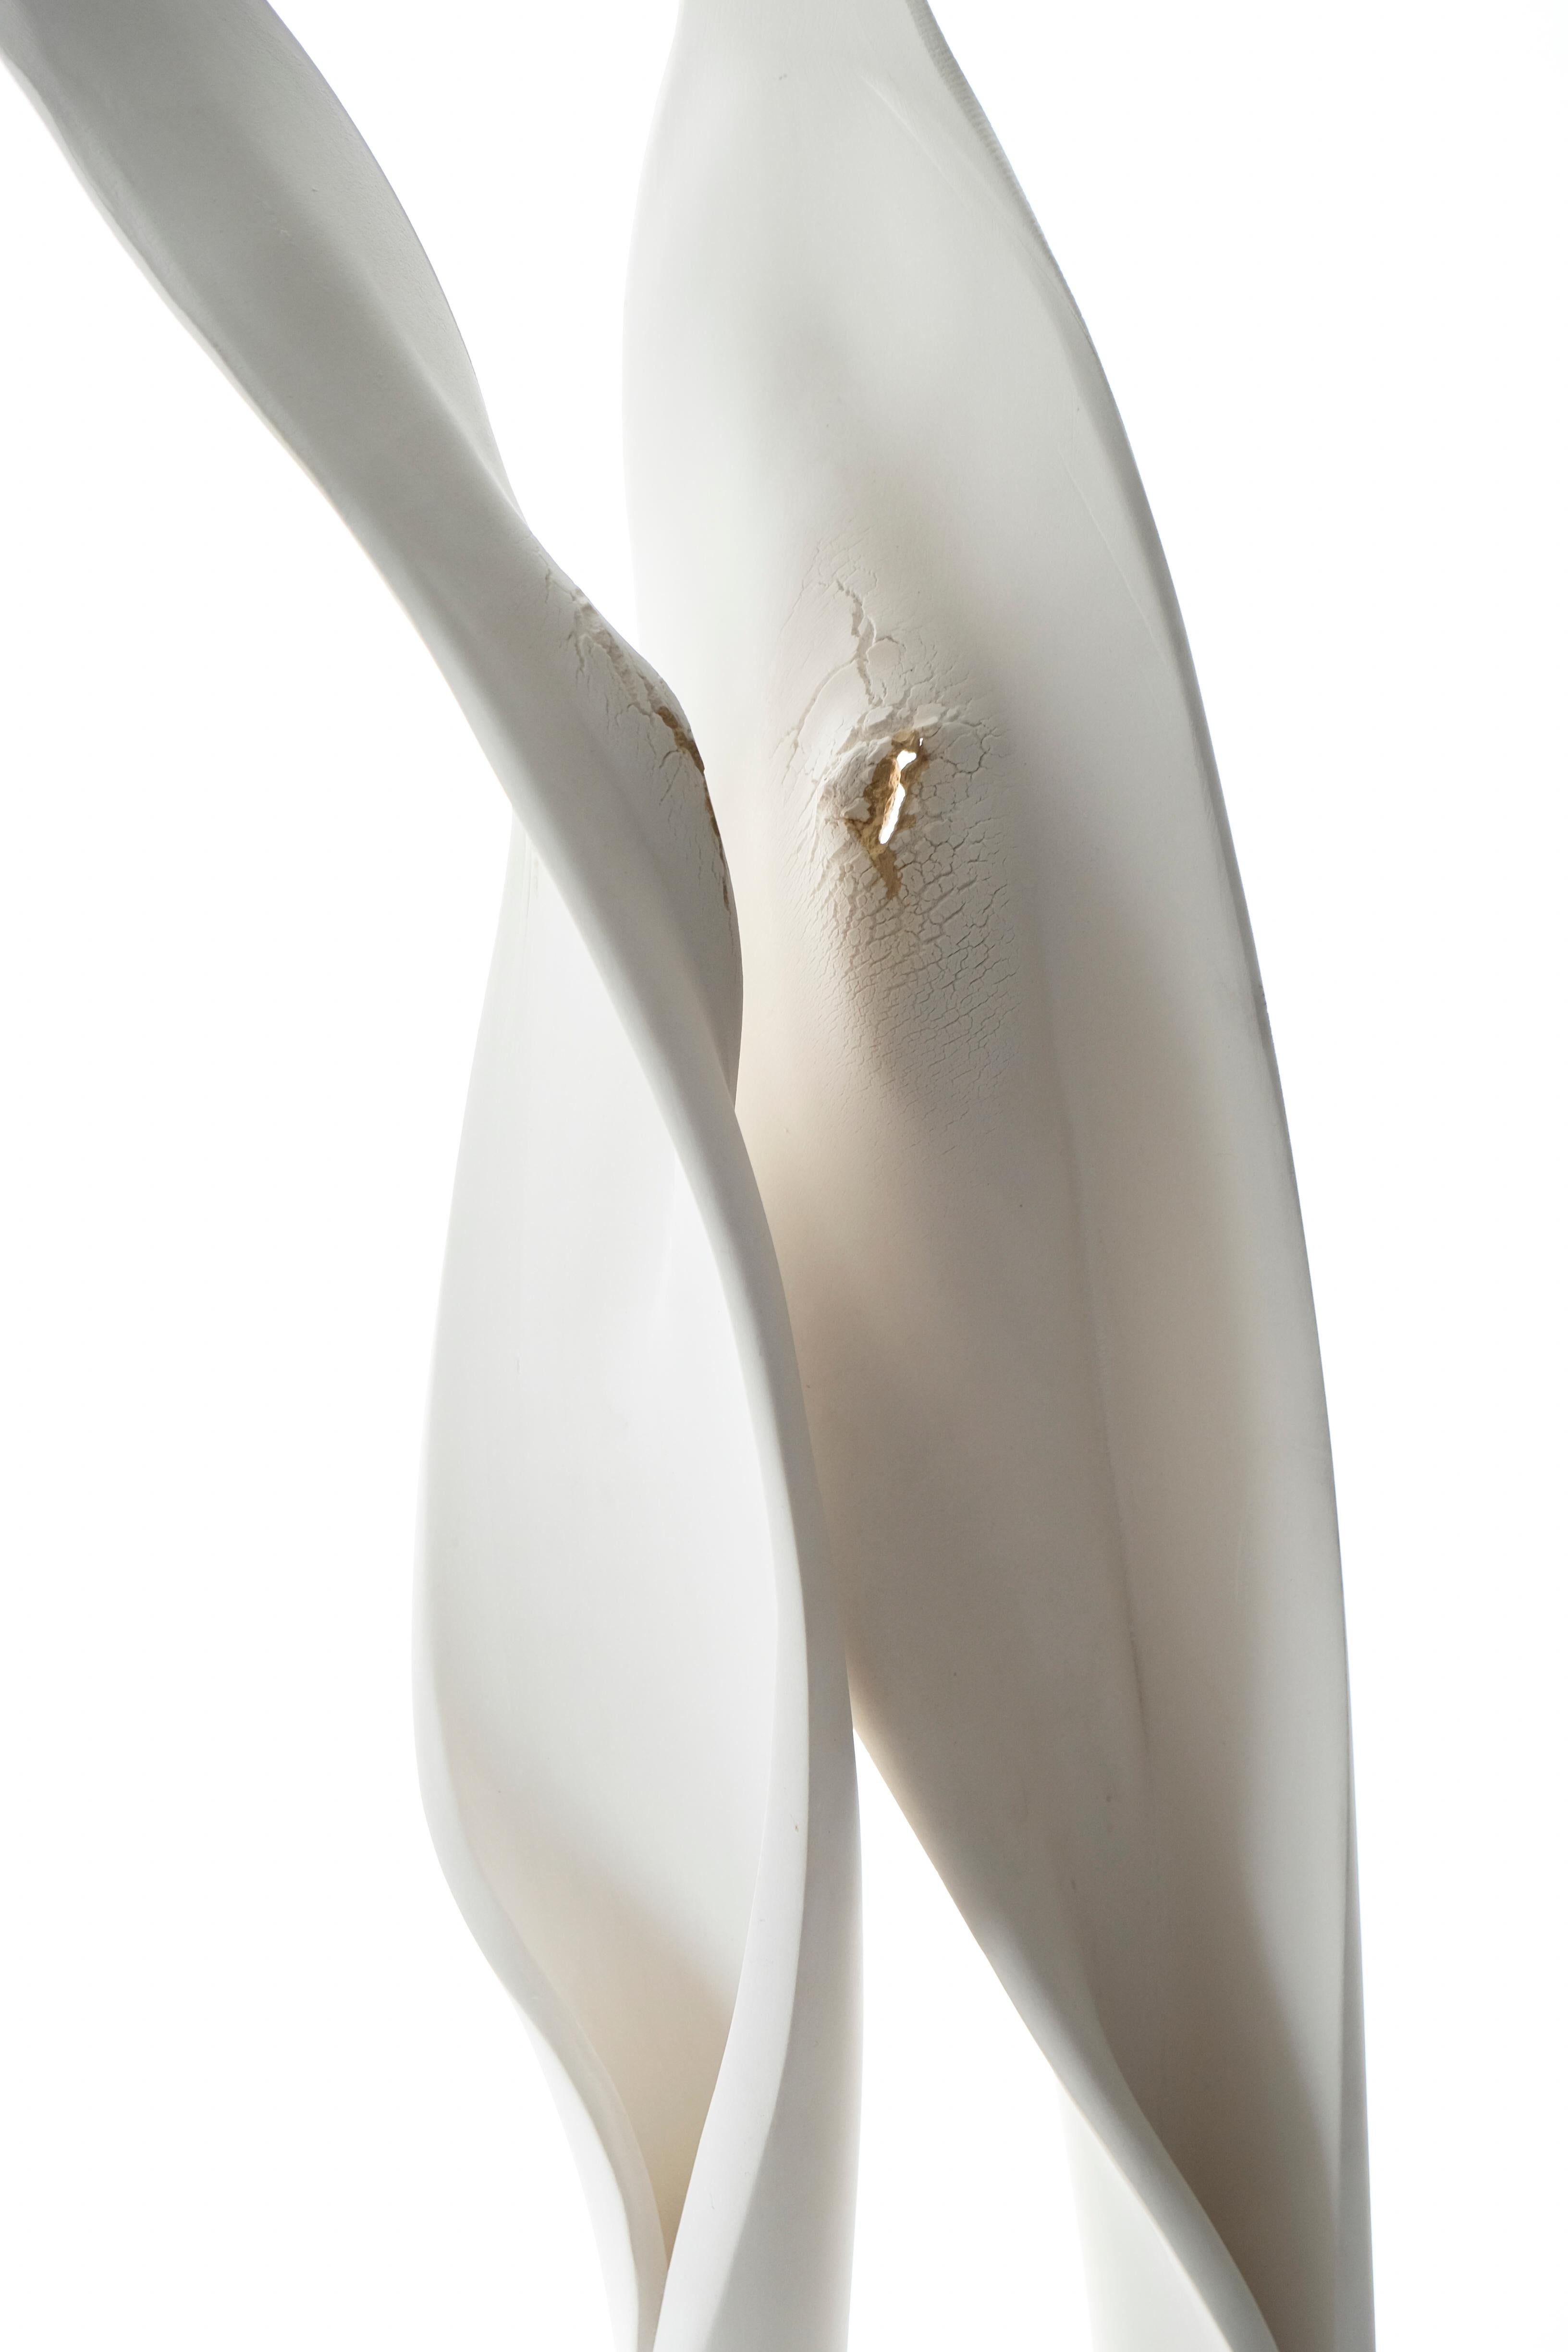 Porcelaine céramique, bois de Sugi, sculpture abstraite : « Version deux d'intimité » - Contemporain Sculpture par Tanis Saxby